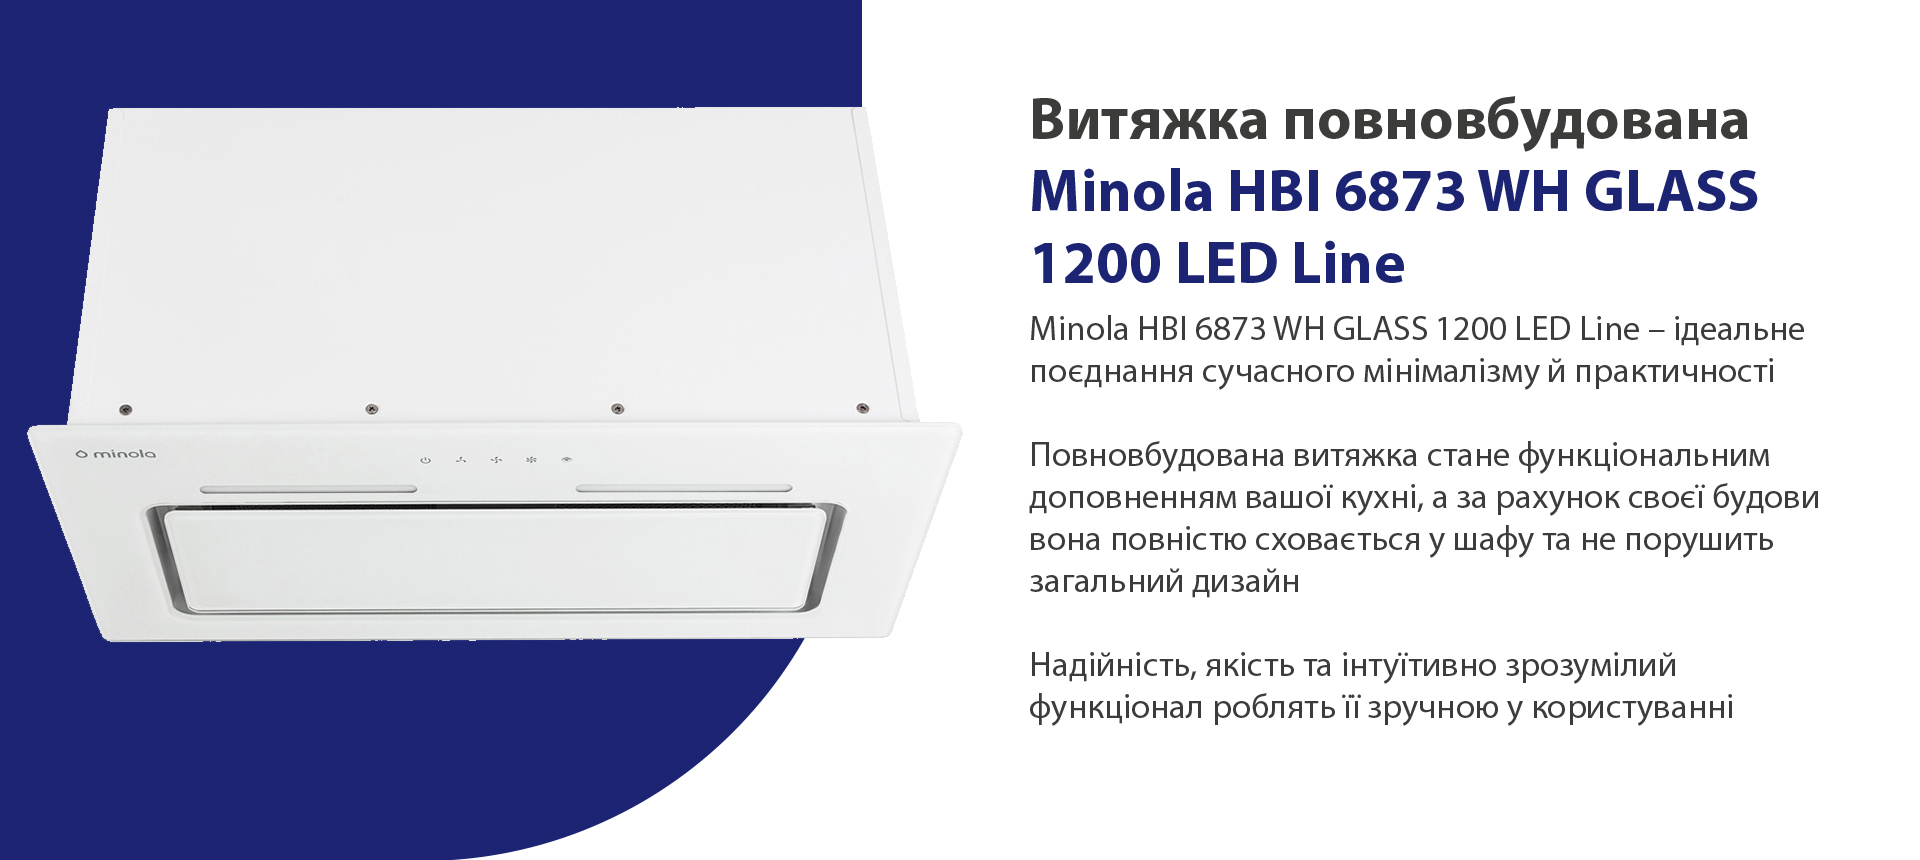 Minola HBI 6873 WH GLASS 1200 LED Line – ідеальне поєднання сучасного мінімалізму й практичності. Повновбудована витяжка стане функціональним доповненням вашої кухні, а за рахунок своєї будови вона повністю сховається у шафу та не порушить загальний дизайн. Надійність, якість та інтуїтивно зрозумілий функціонал роблять її зручною у користуванні